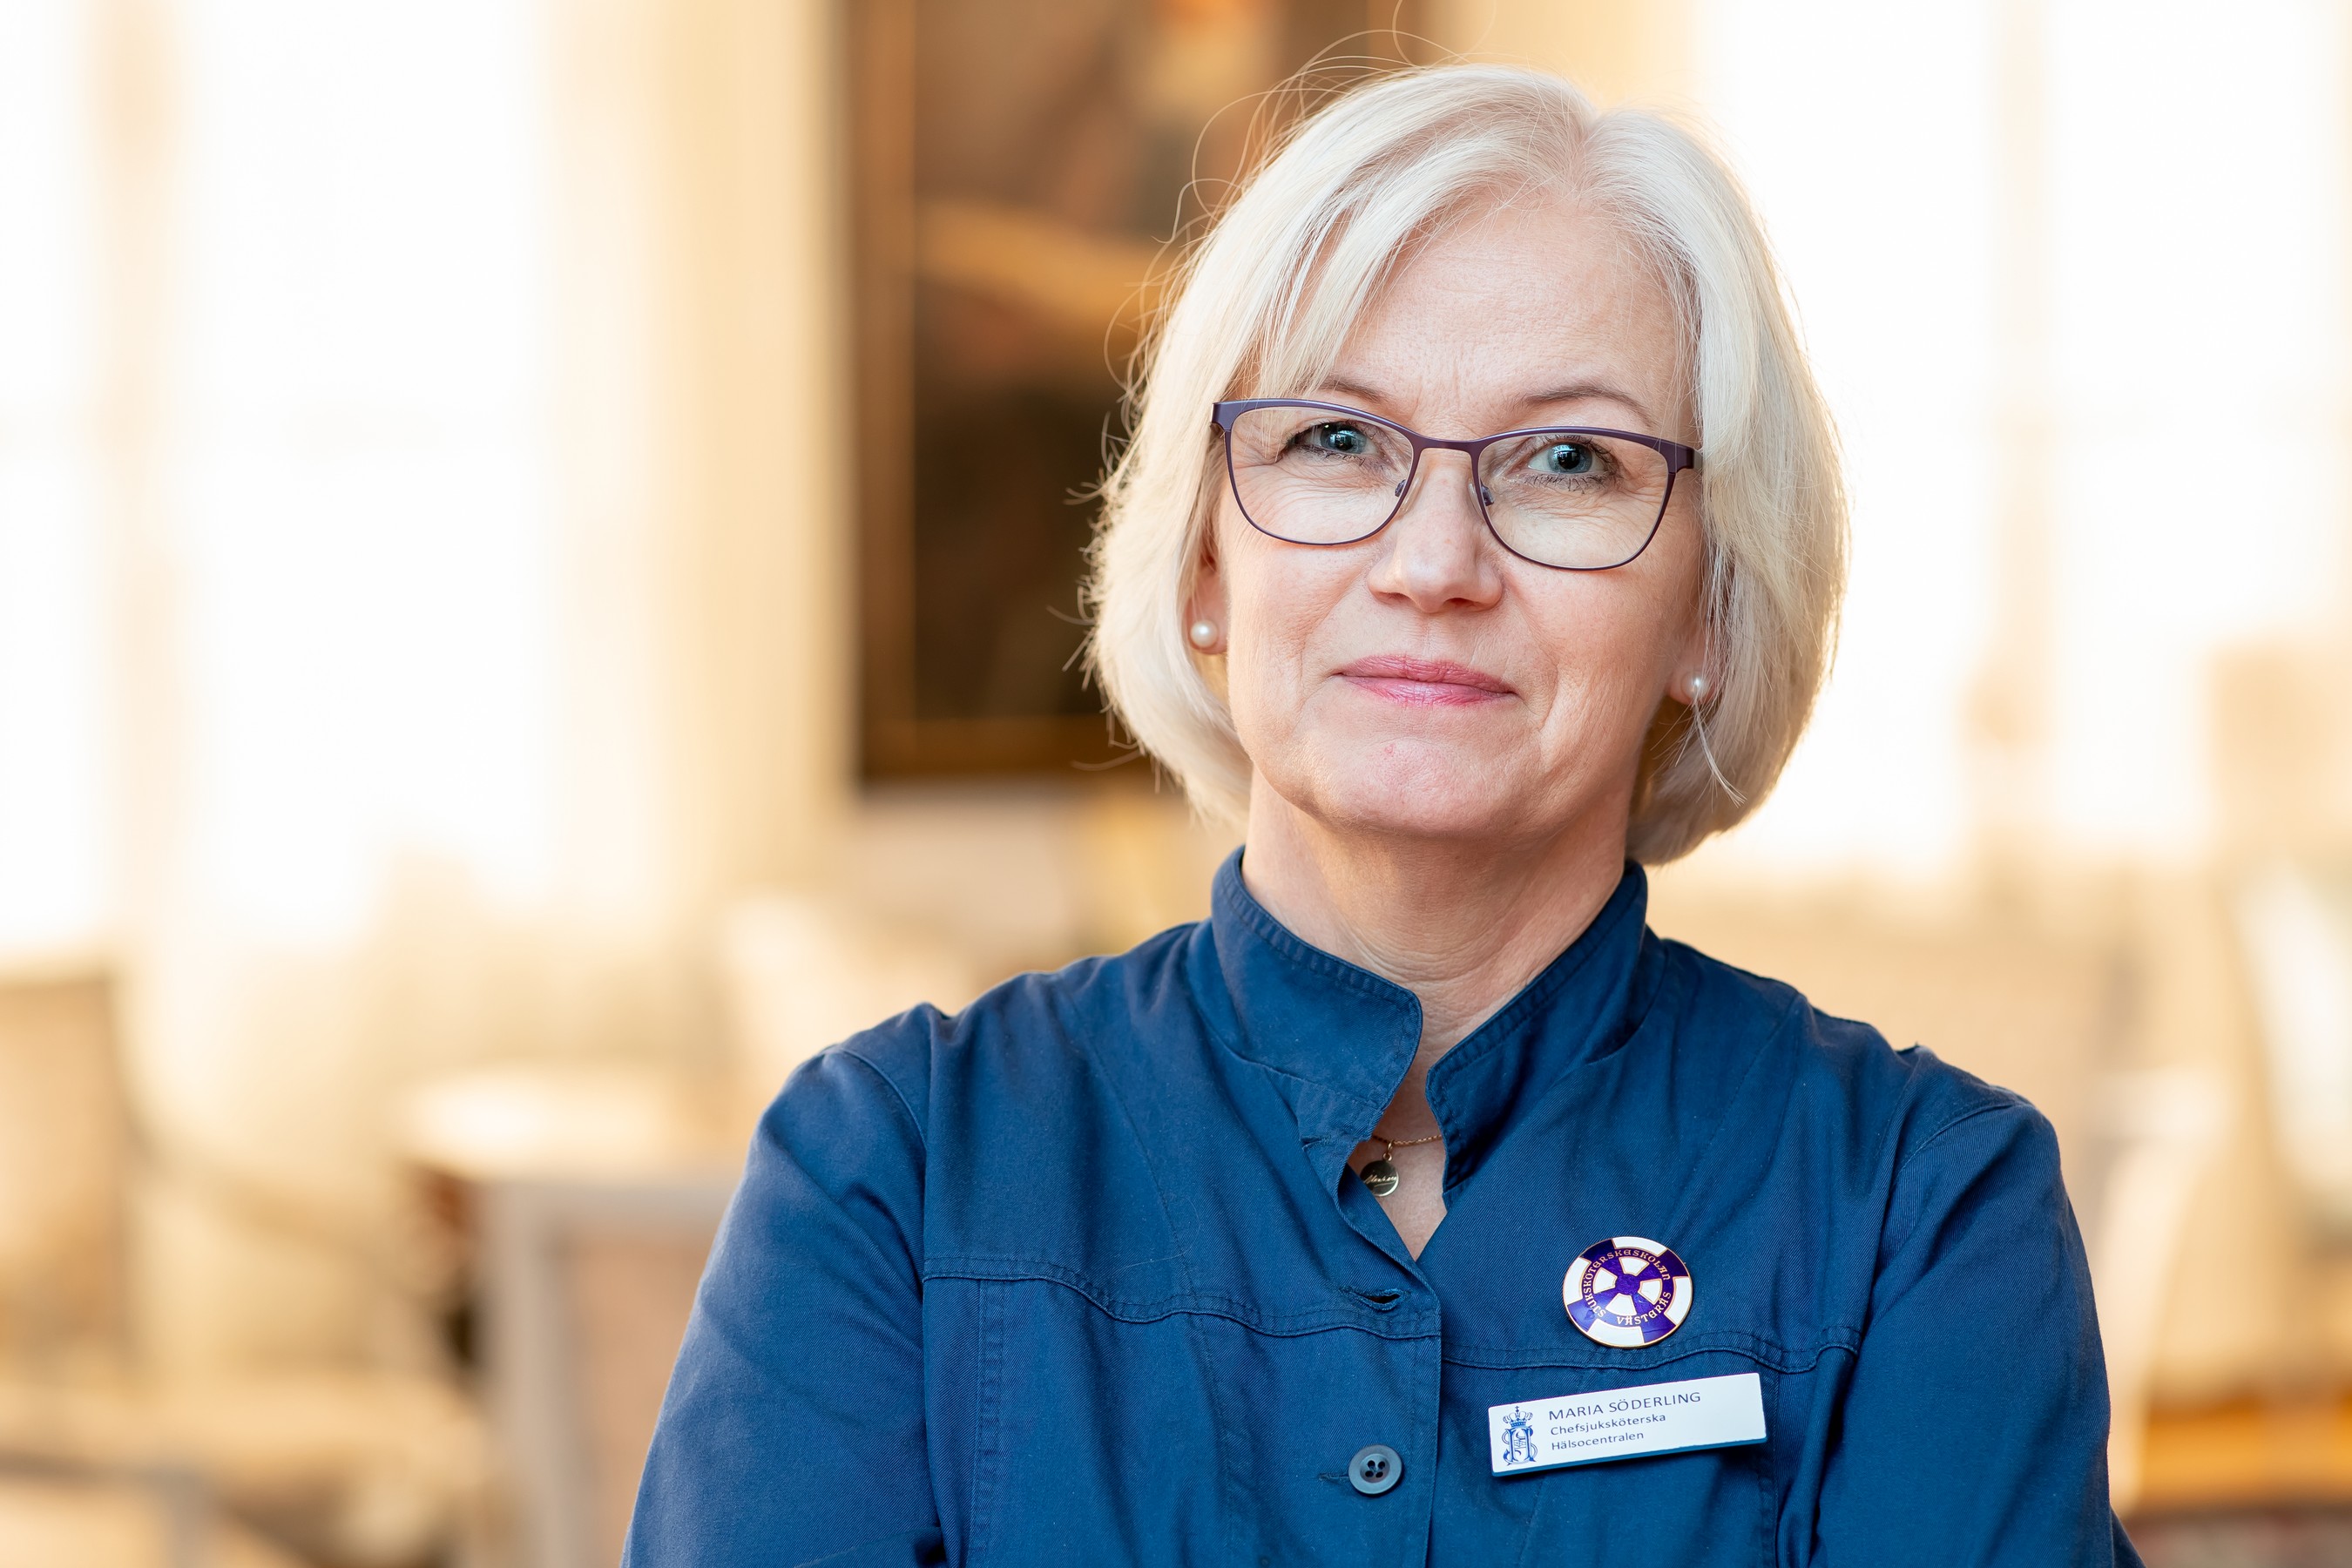 Porträtt av chefsjuksköterska på Hälsocentralen Maria Söderling